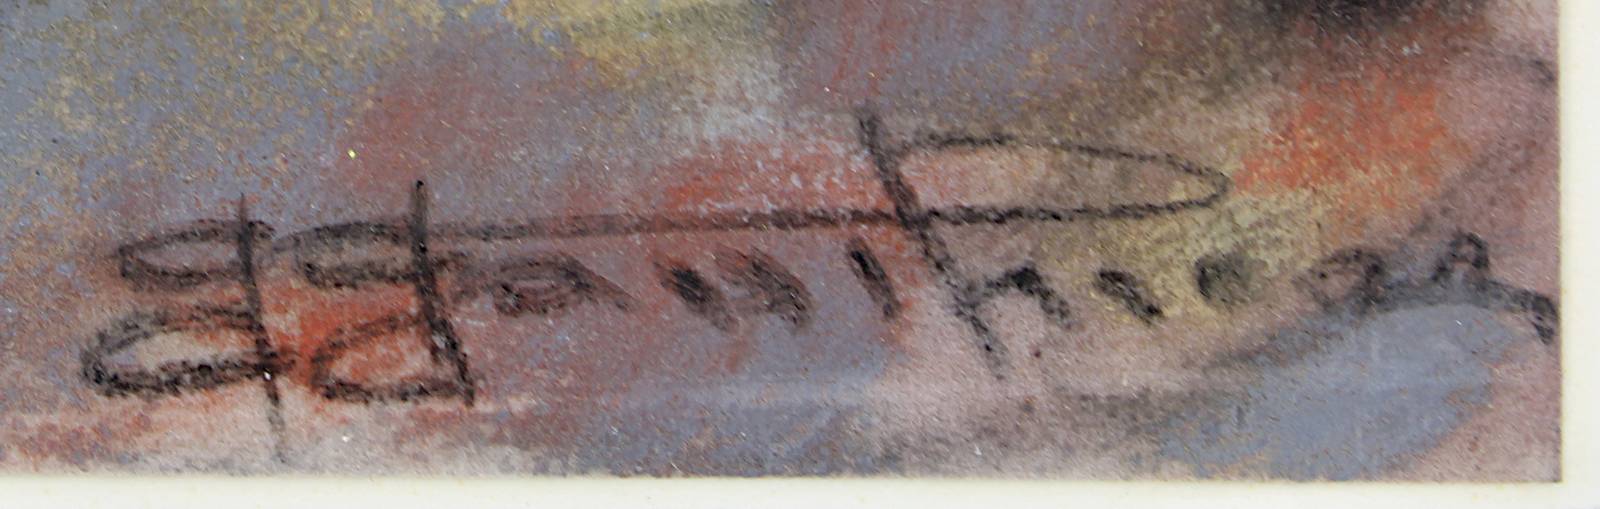 Ungedeuteter Künstler Mitte 20. Jh., Säende Bäuerin, farbige Pastellzeichnung, 30,5 x 22 cm, am - Image 2 of 2